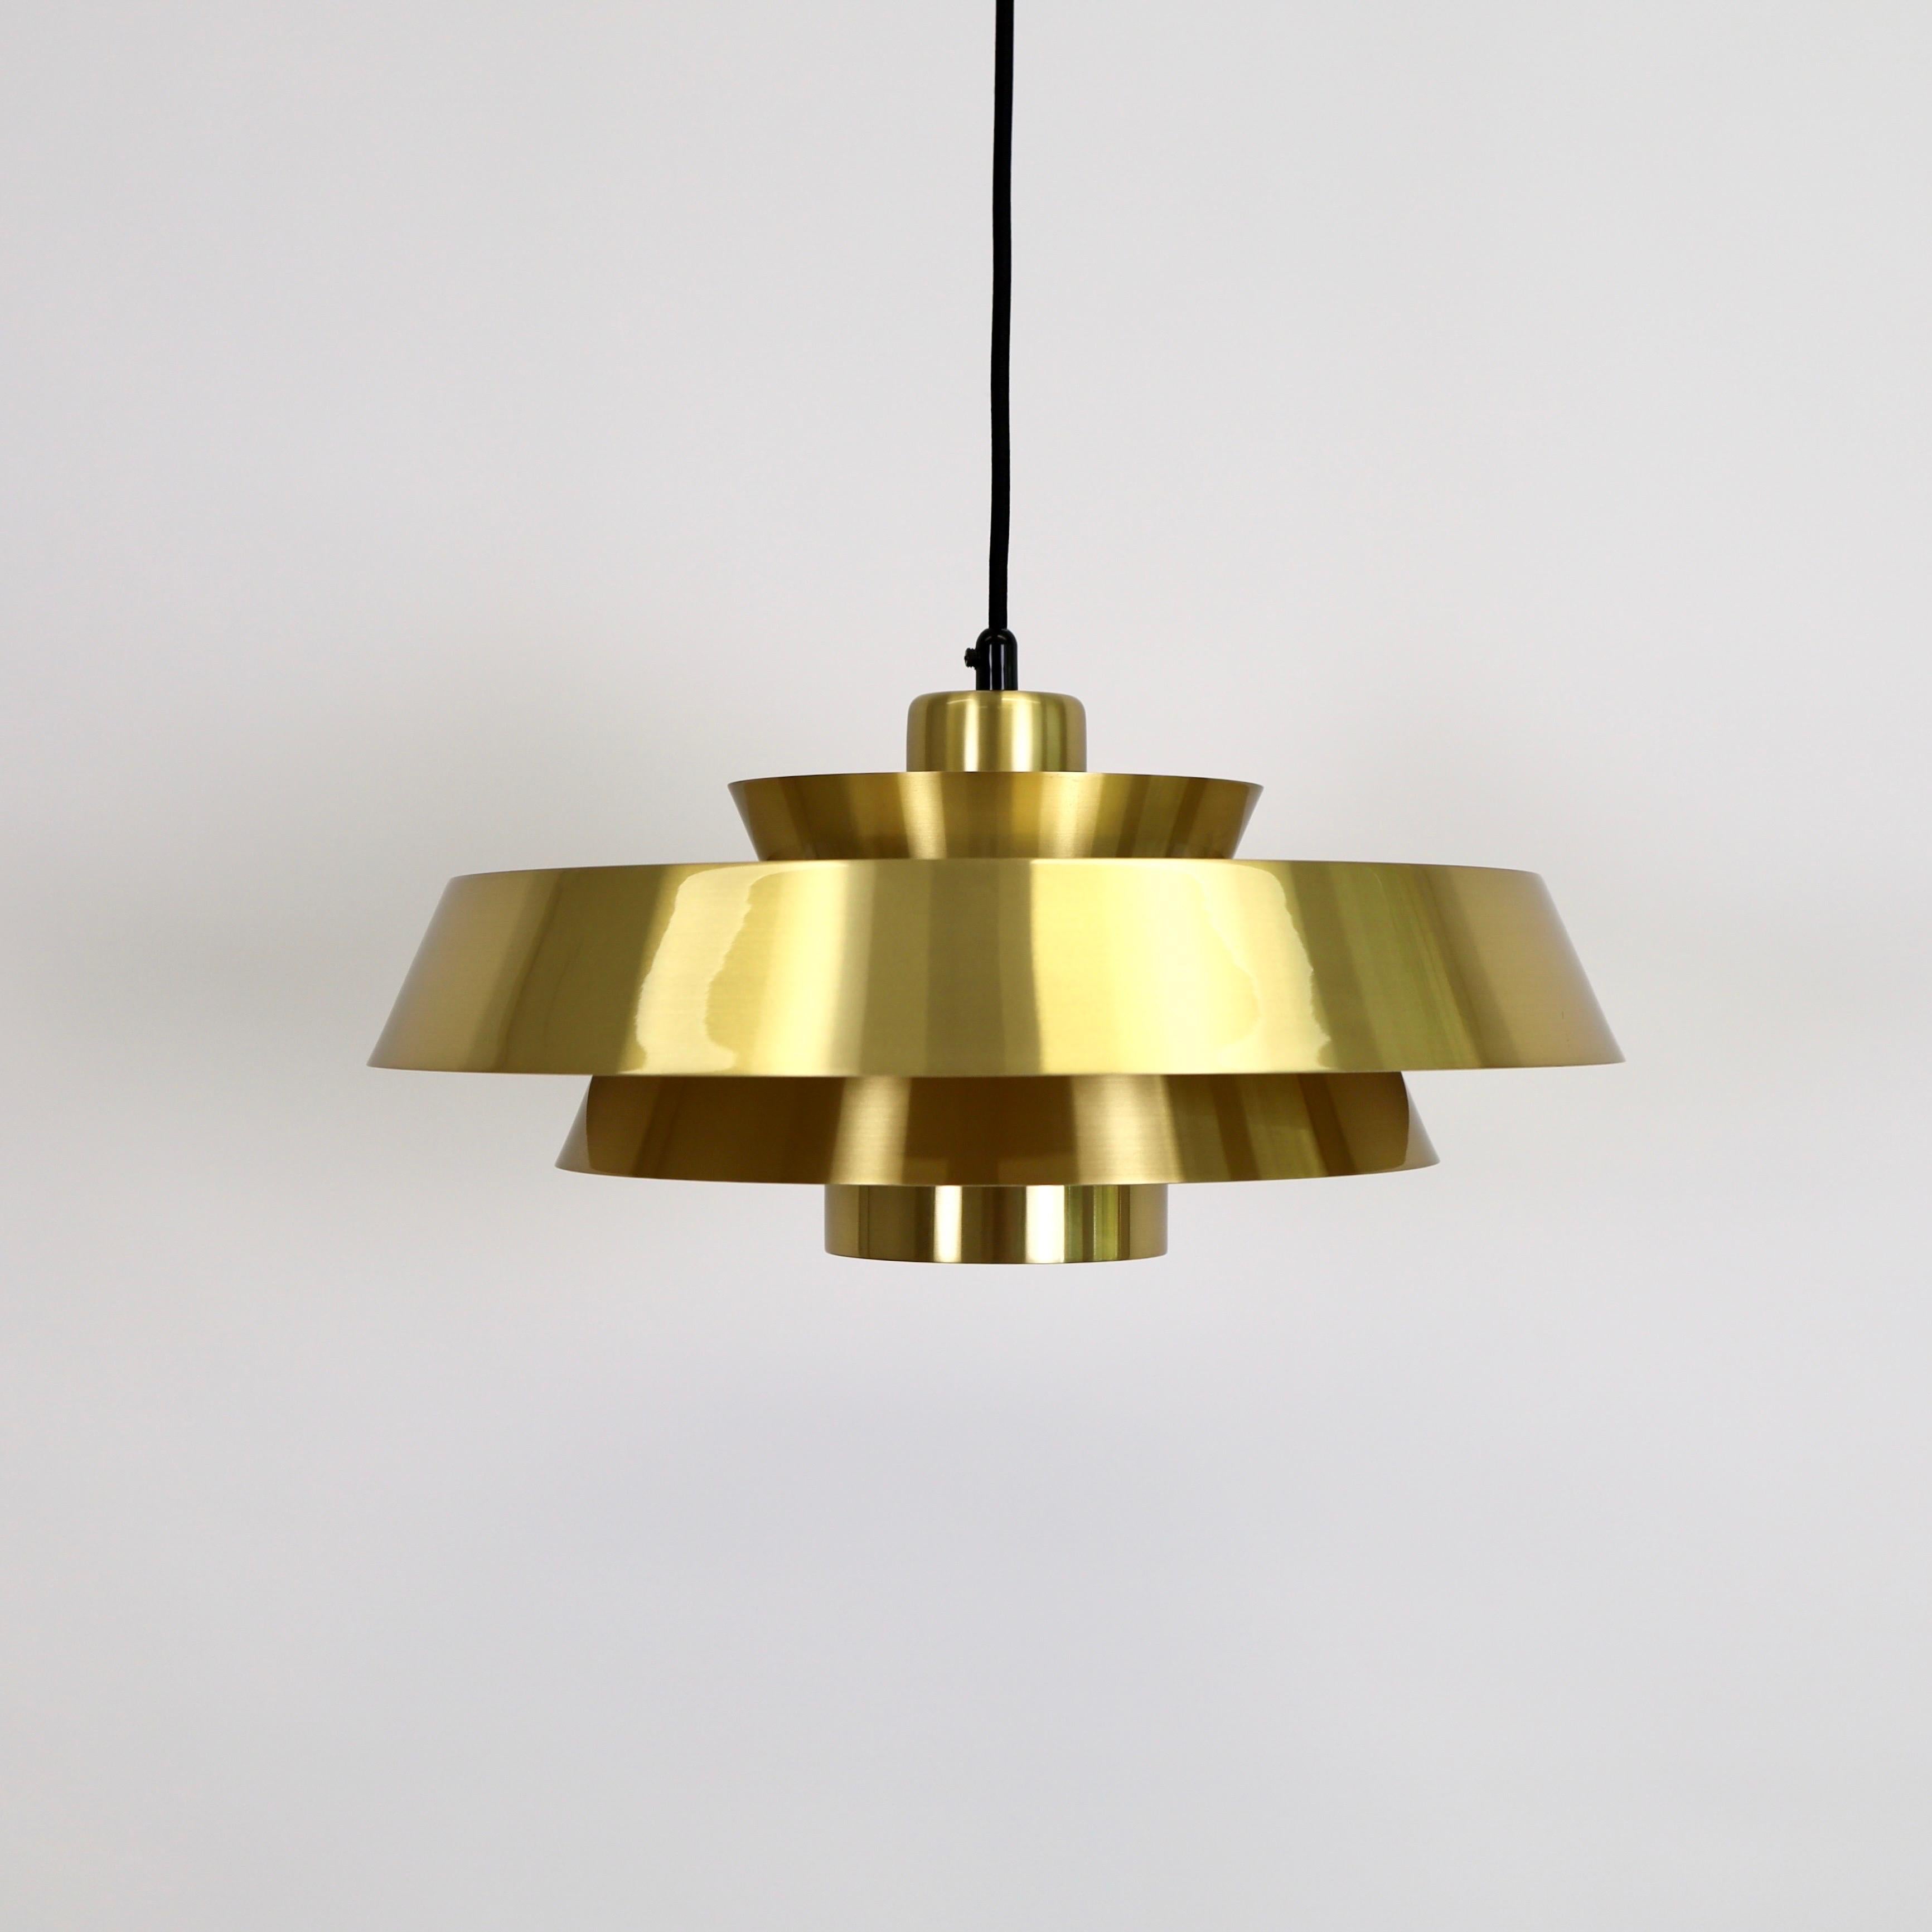 Set of Brass Pendant Lights by Jo Hammerborg for Fog & Morup, 1960s, Denmark For Sale 1